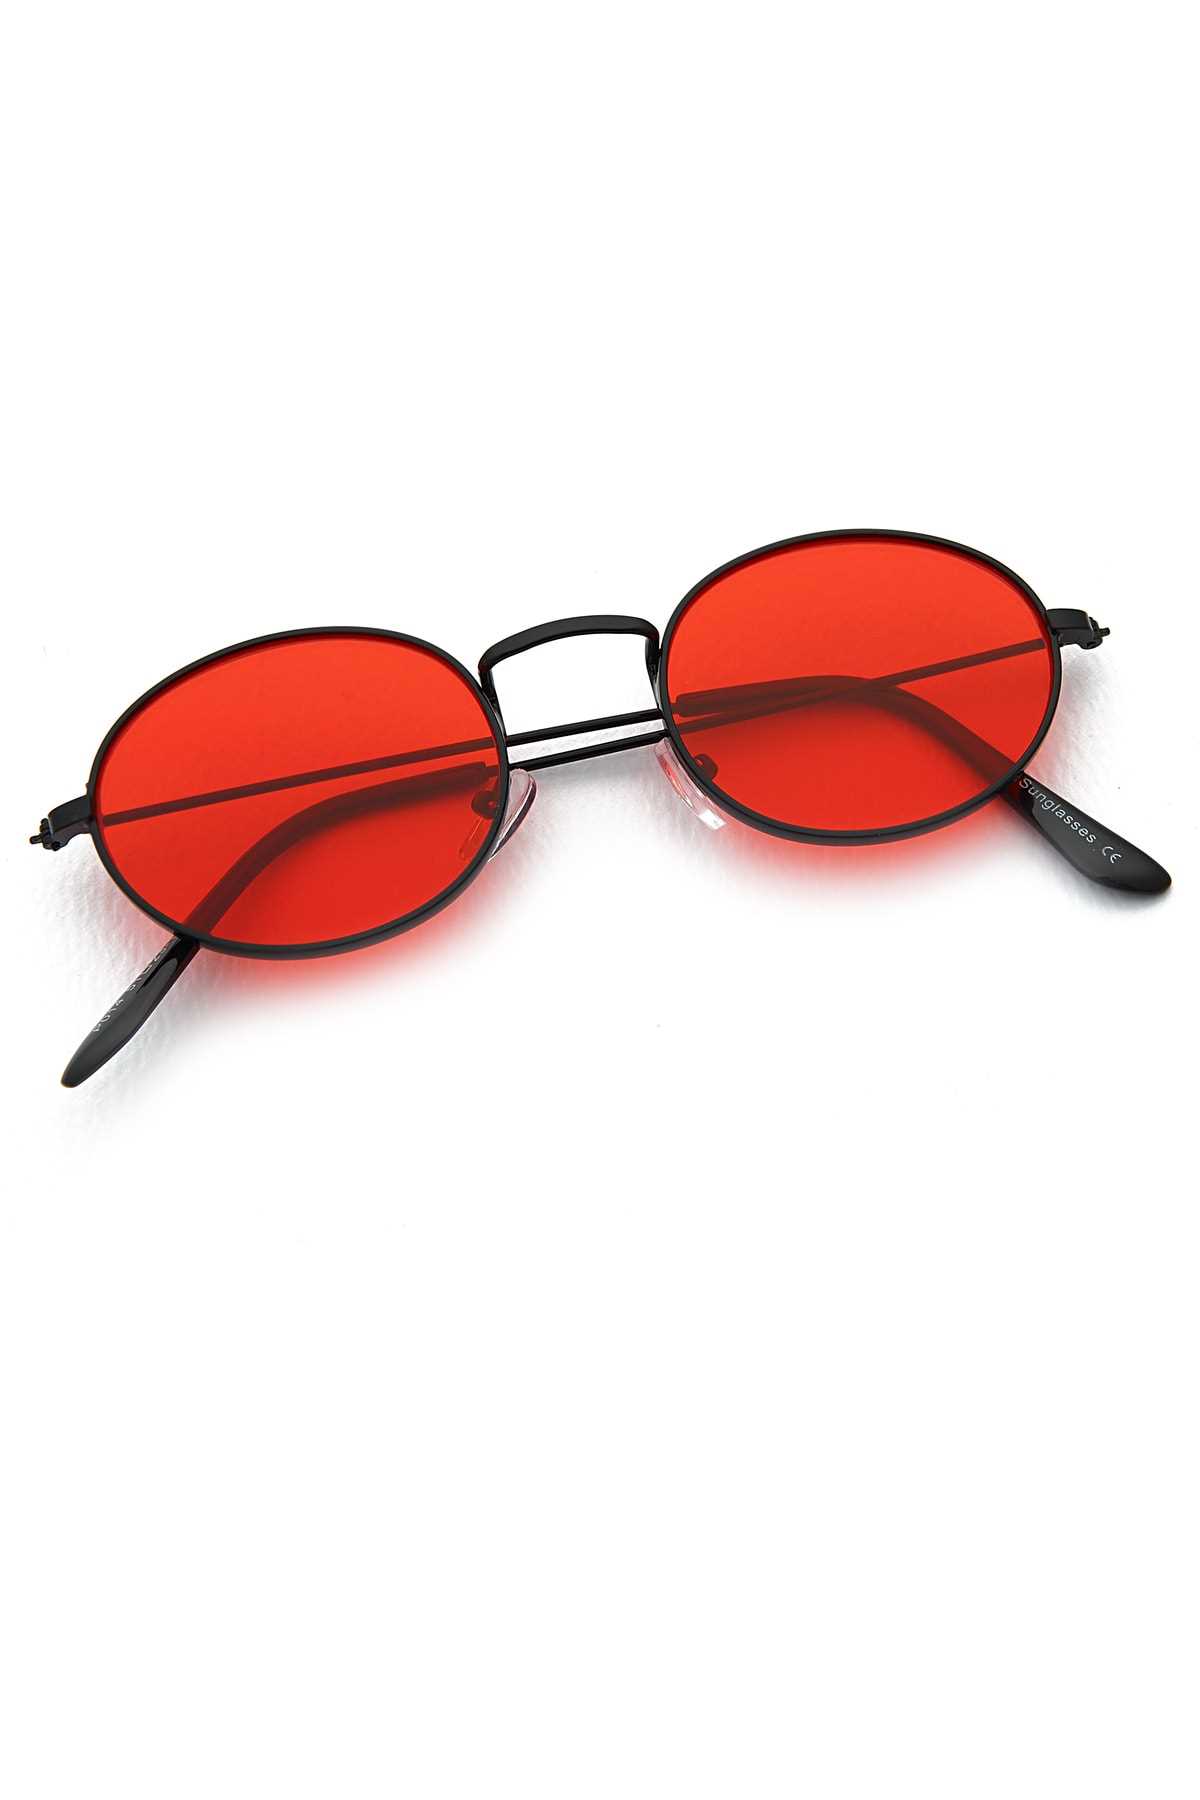 عینک آفتابی زنانه مارک مارک Aqua Di Polo 1987 رنگ قرمز ty91551694